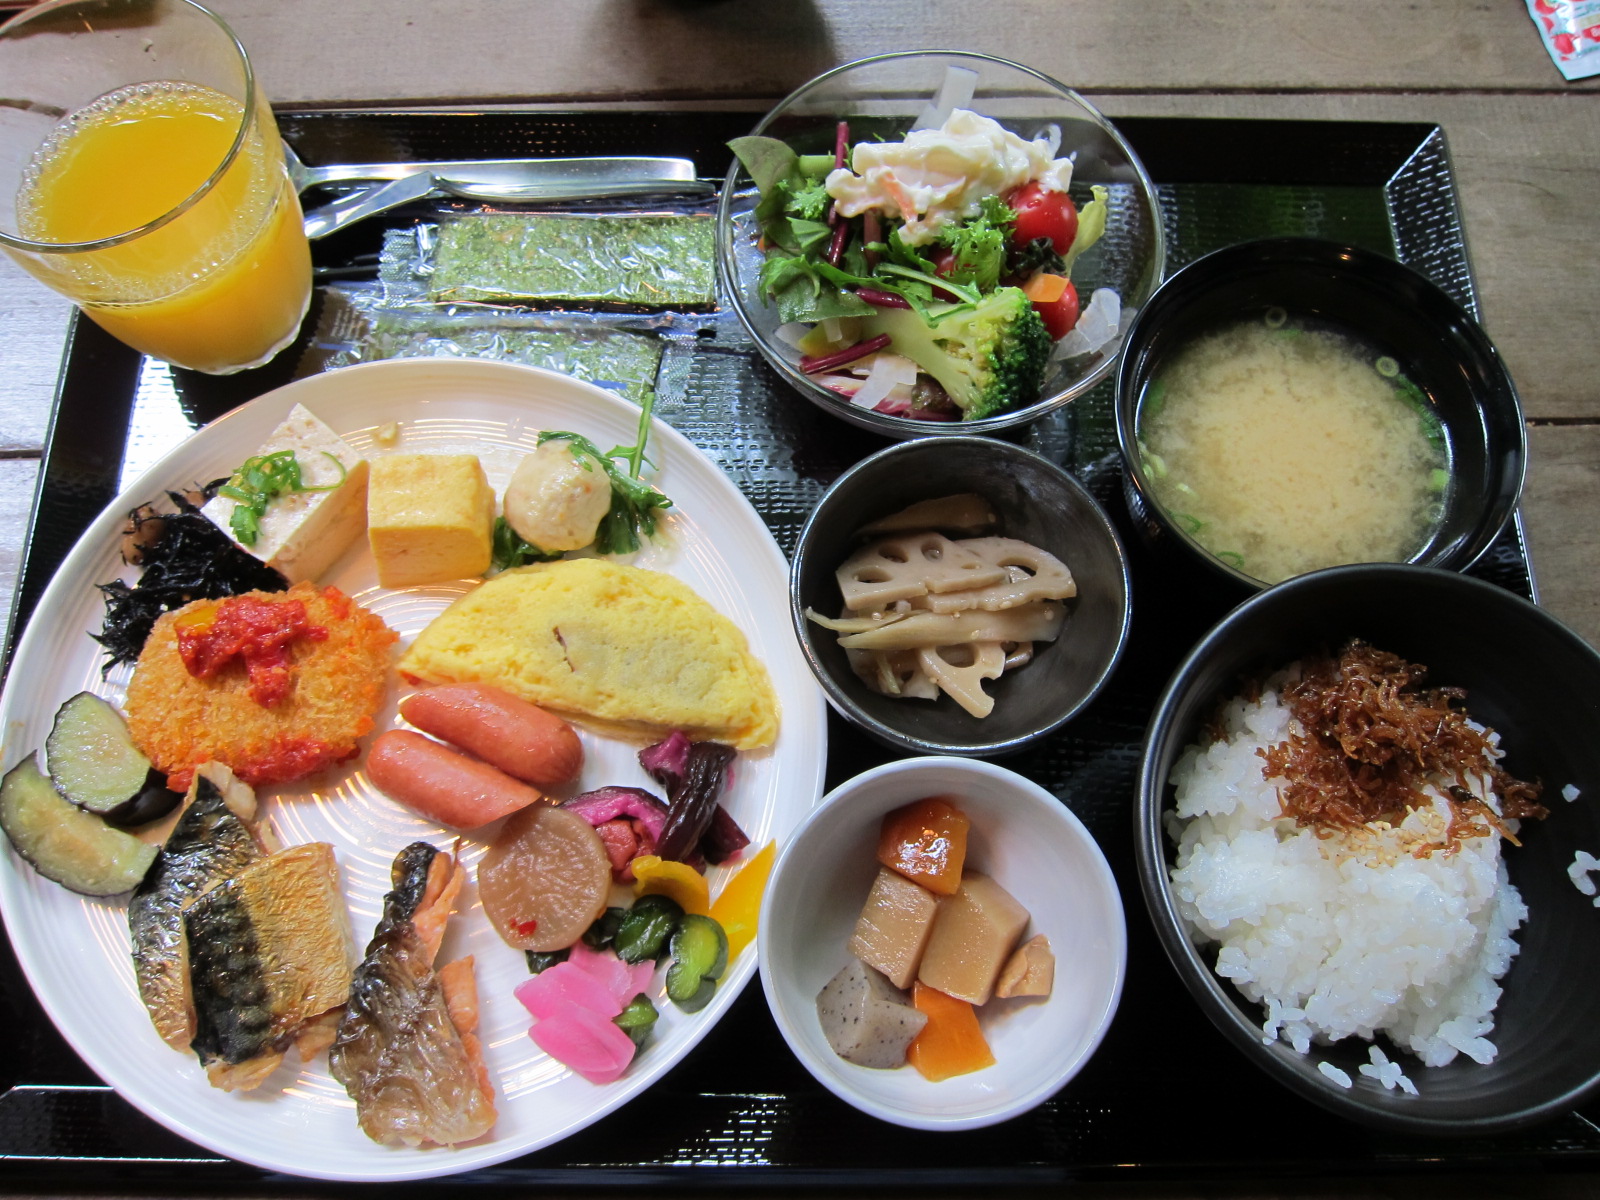 завтрак в японии